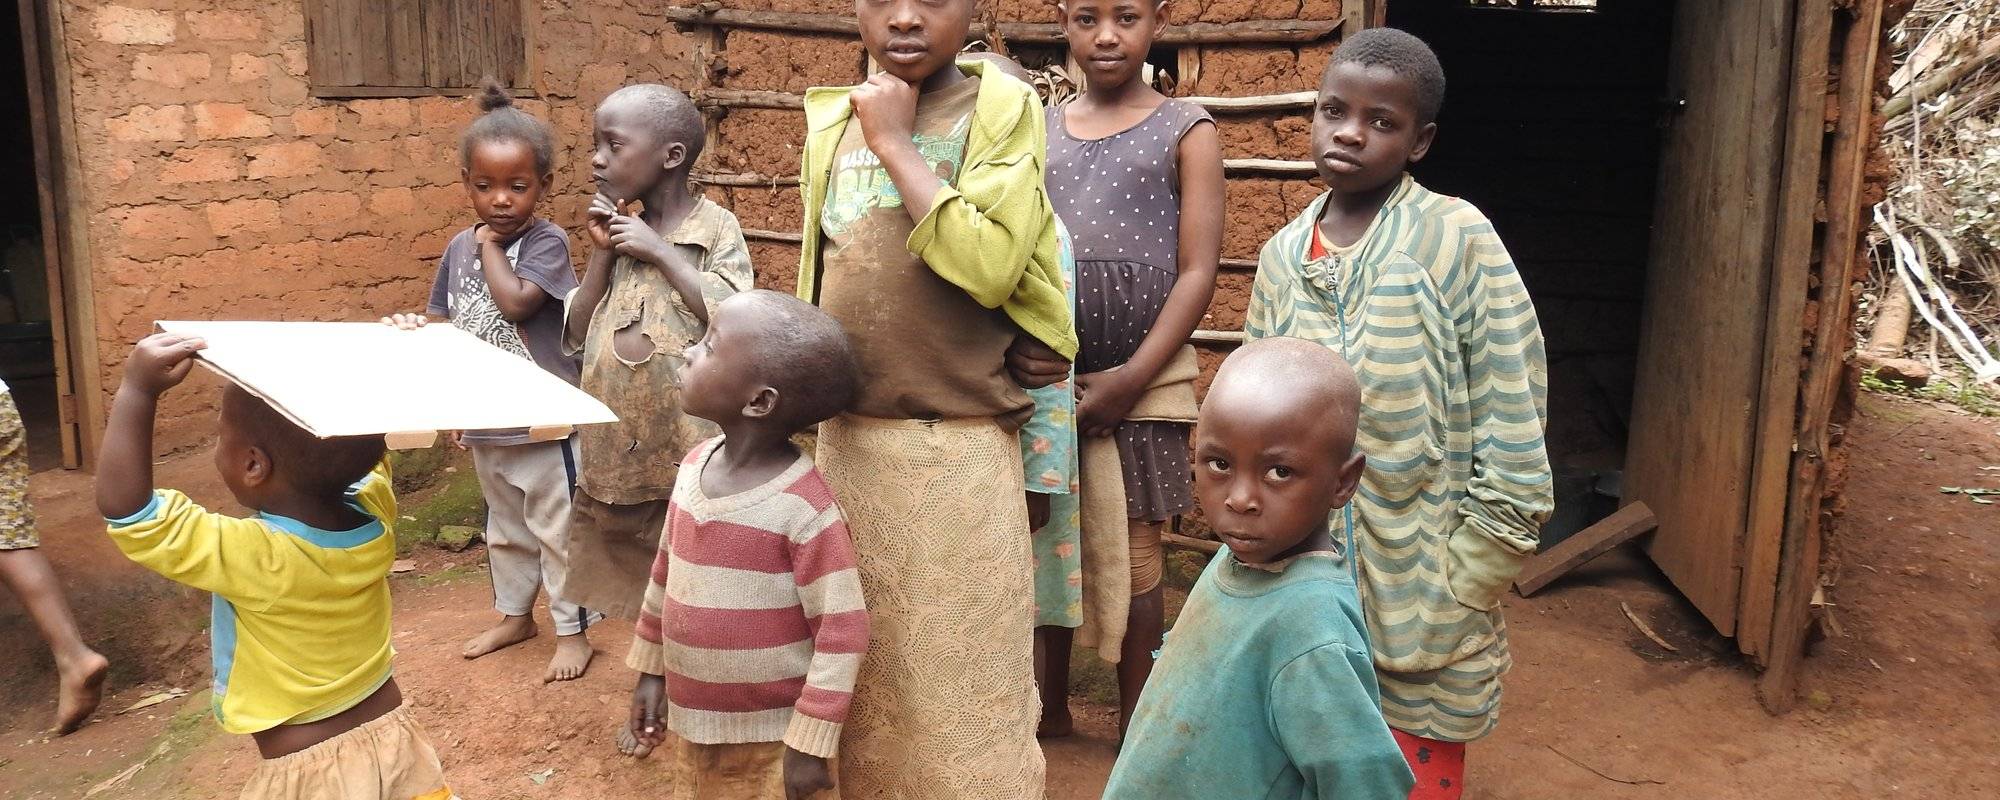 Nachtrag/Supplement „Wir bringen Licht“-Die Geschichte unseres Uganda-Projekts / "We bring light" -The story of our Uganda project (Teil 8 - Part 8)